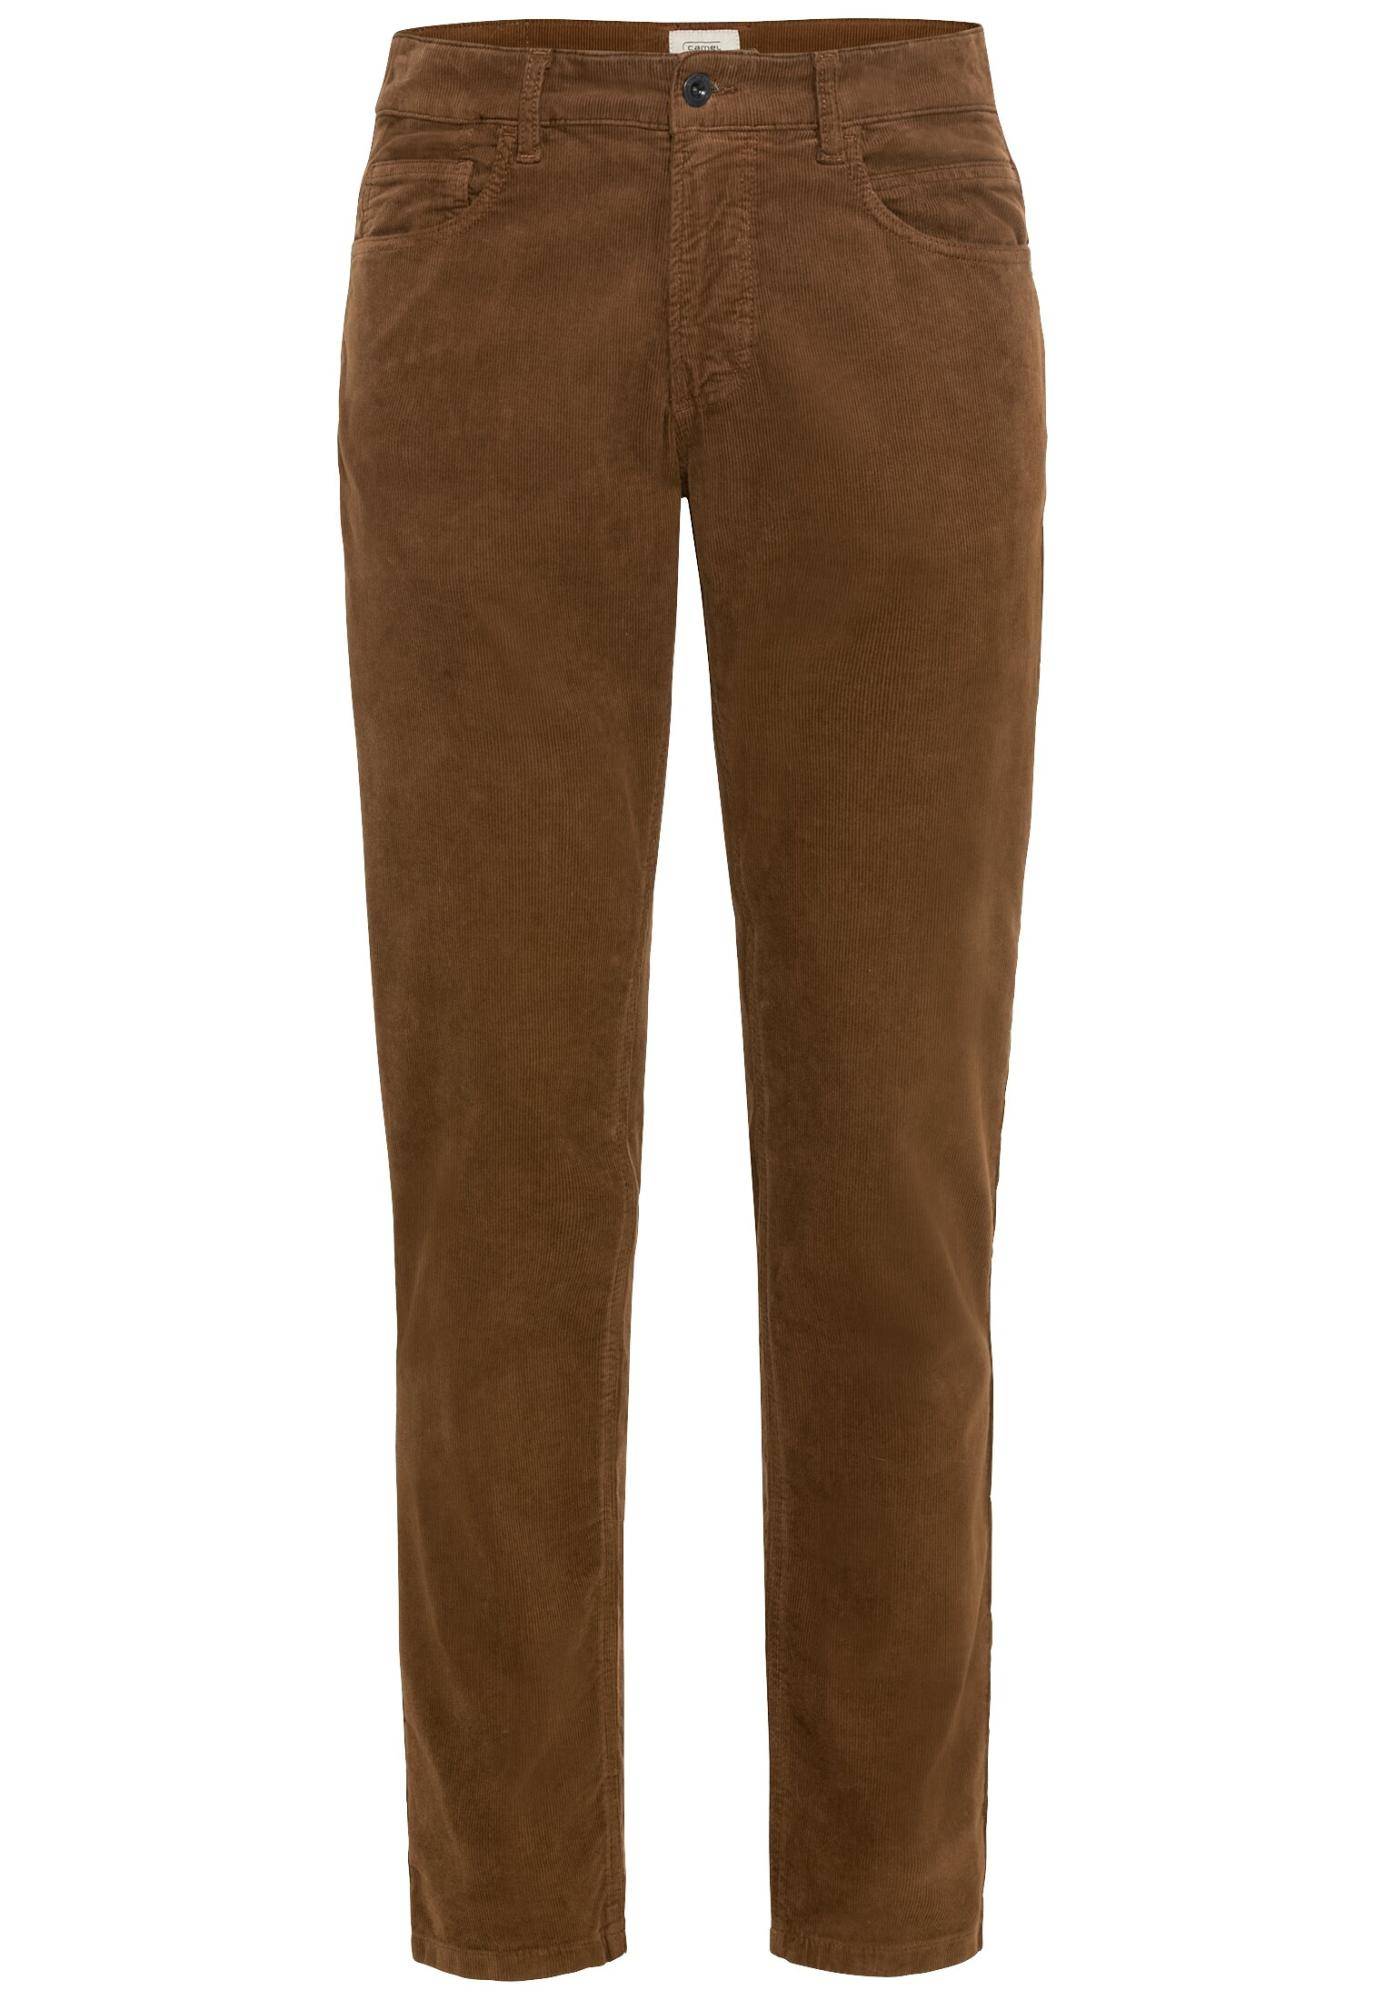 Мужские джинсы Camel Active, бежевые, цвет бежевый, размер 32